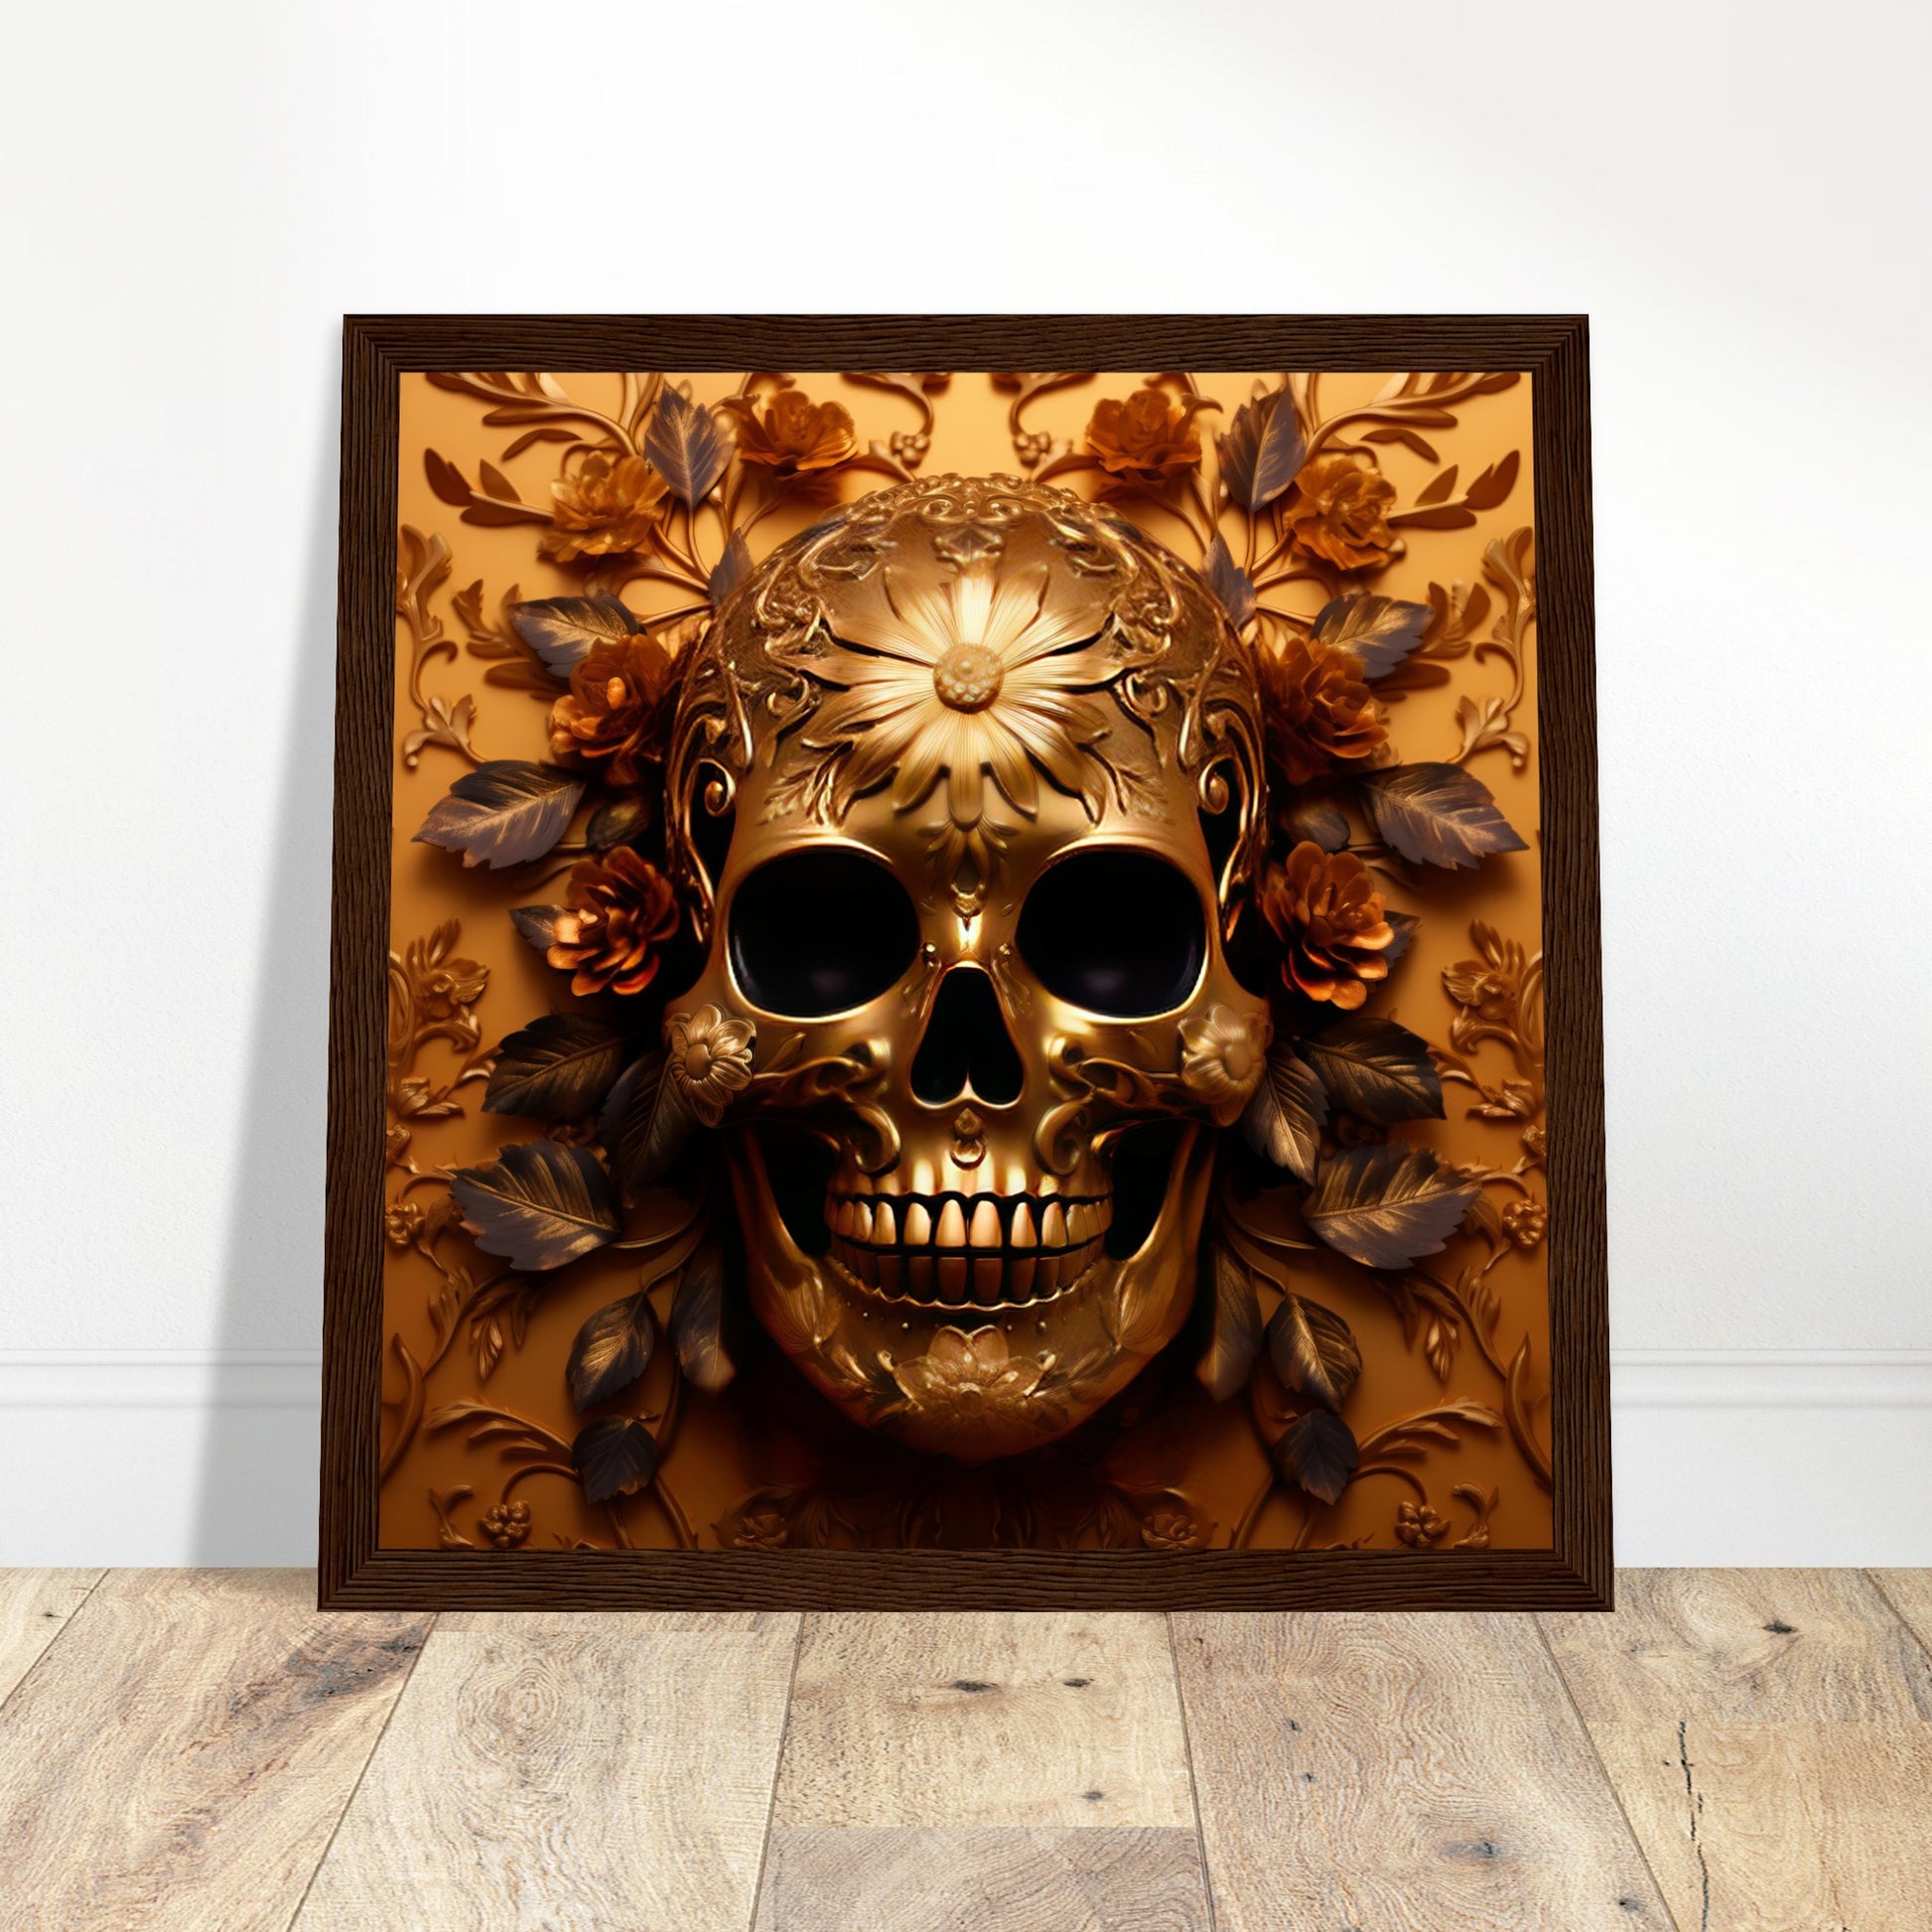 Golden Skull Artwork - Print Room Ltd Black frame 50x50 cm / 20x20"